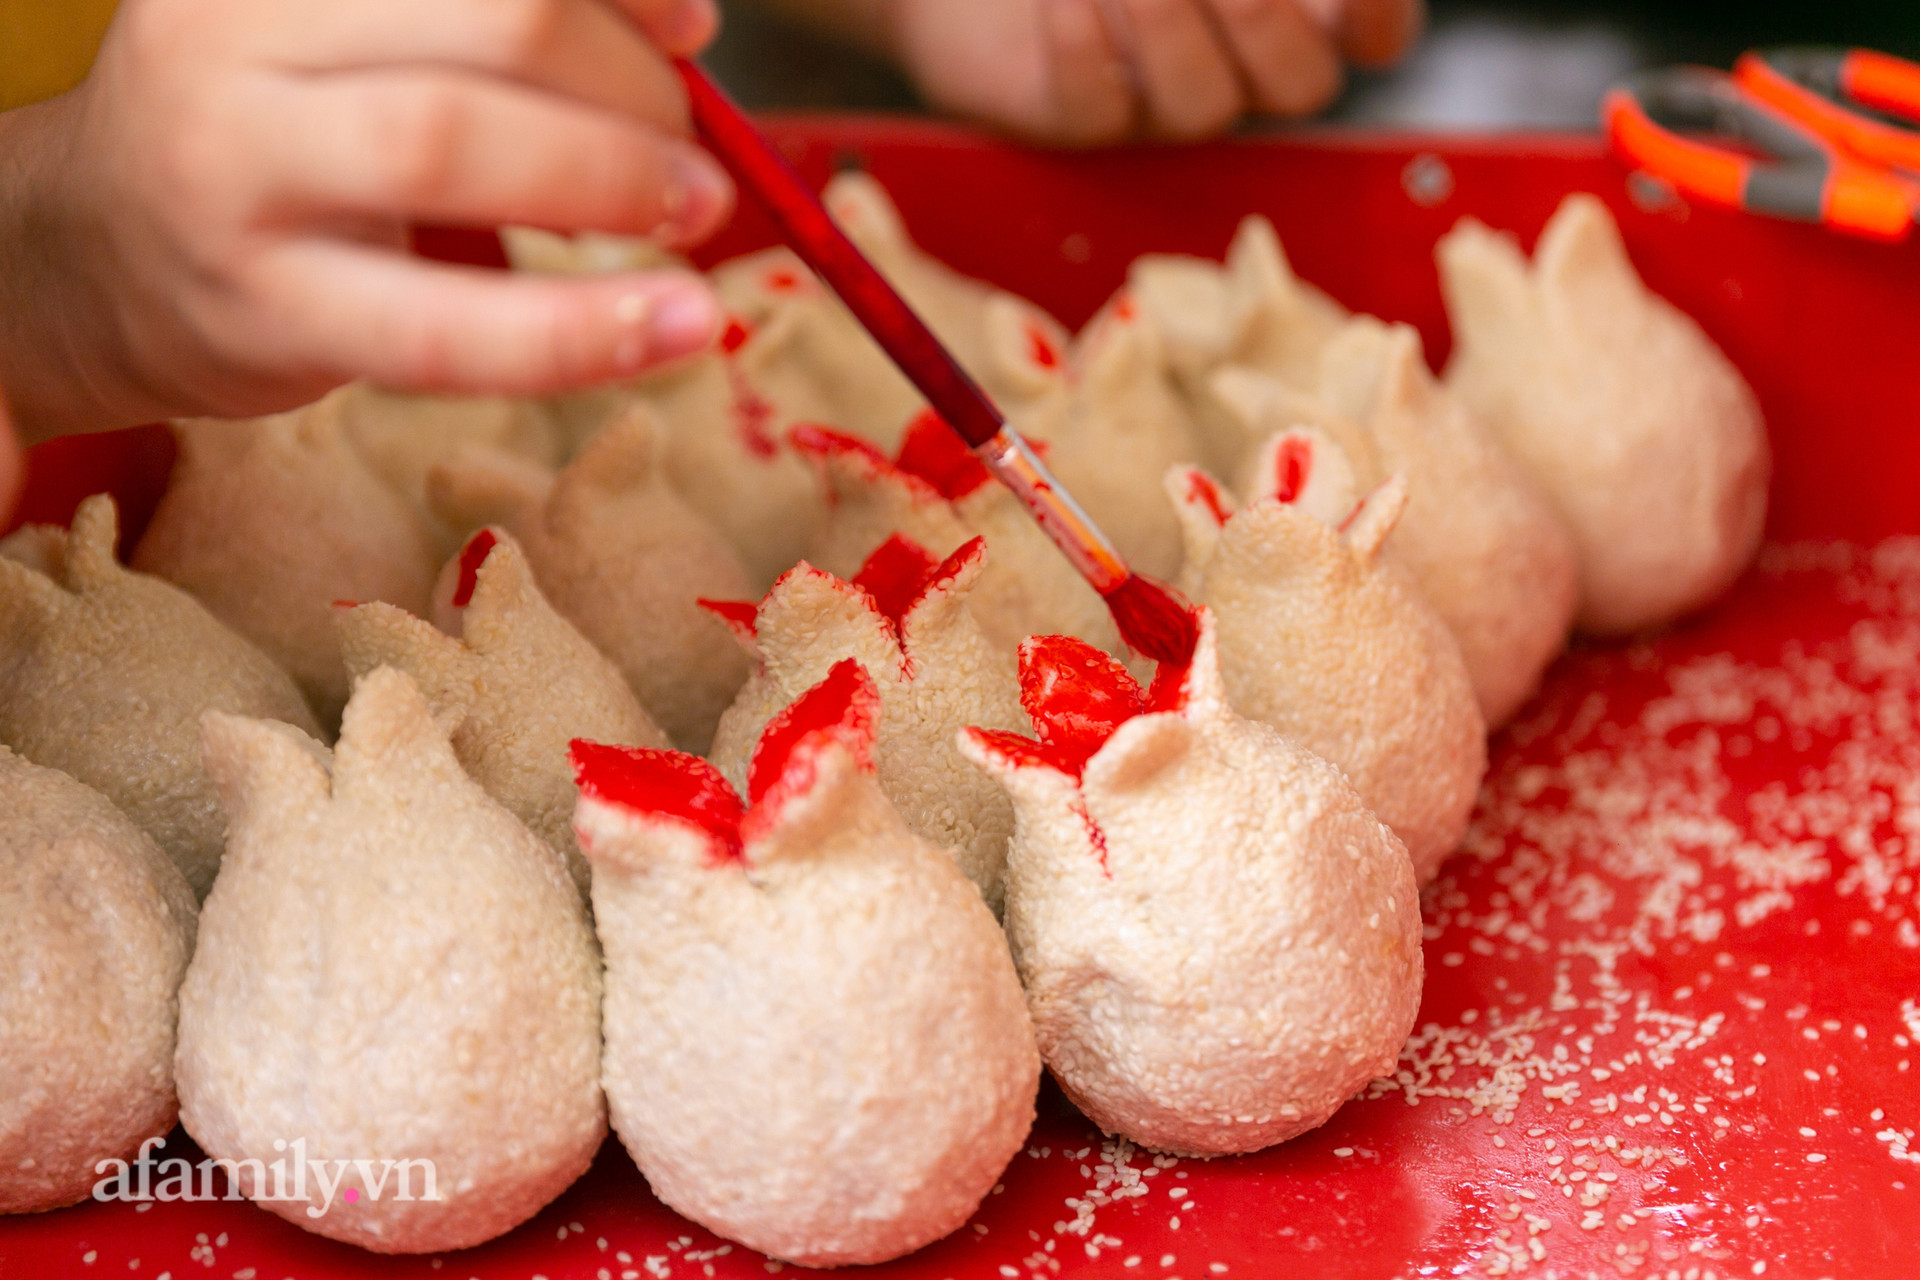 Độc đáo bánh lựu cầu duyên truyền thống của người Hoa ở Sài Gòn: Chỉ bán duy nhất một lần trong năm, 4 người phụ làm hơn 1.000 cái mà bán sạch trong 1 tiếng - Ảnh 7.